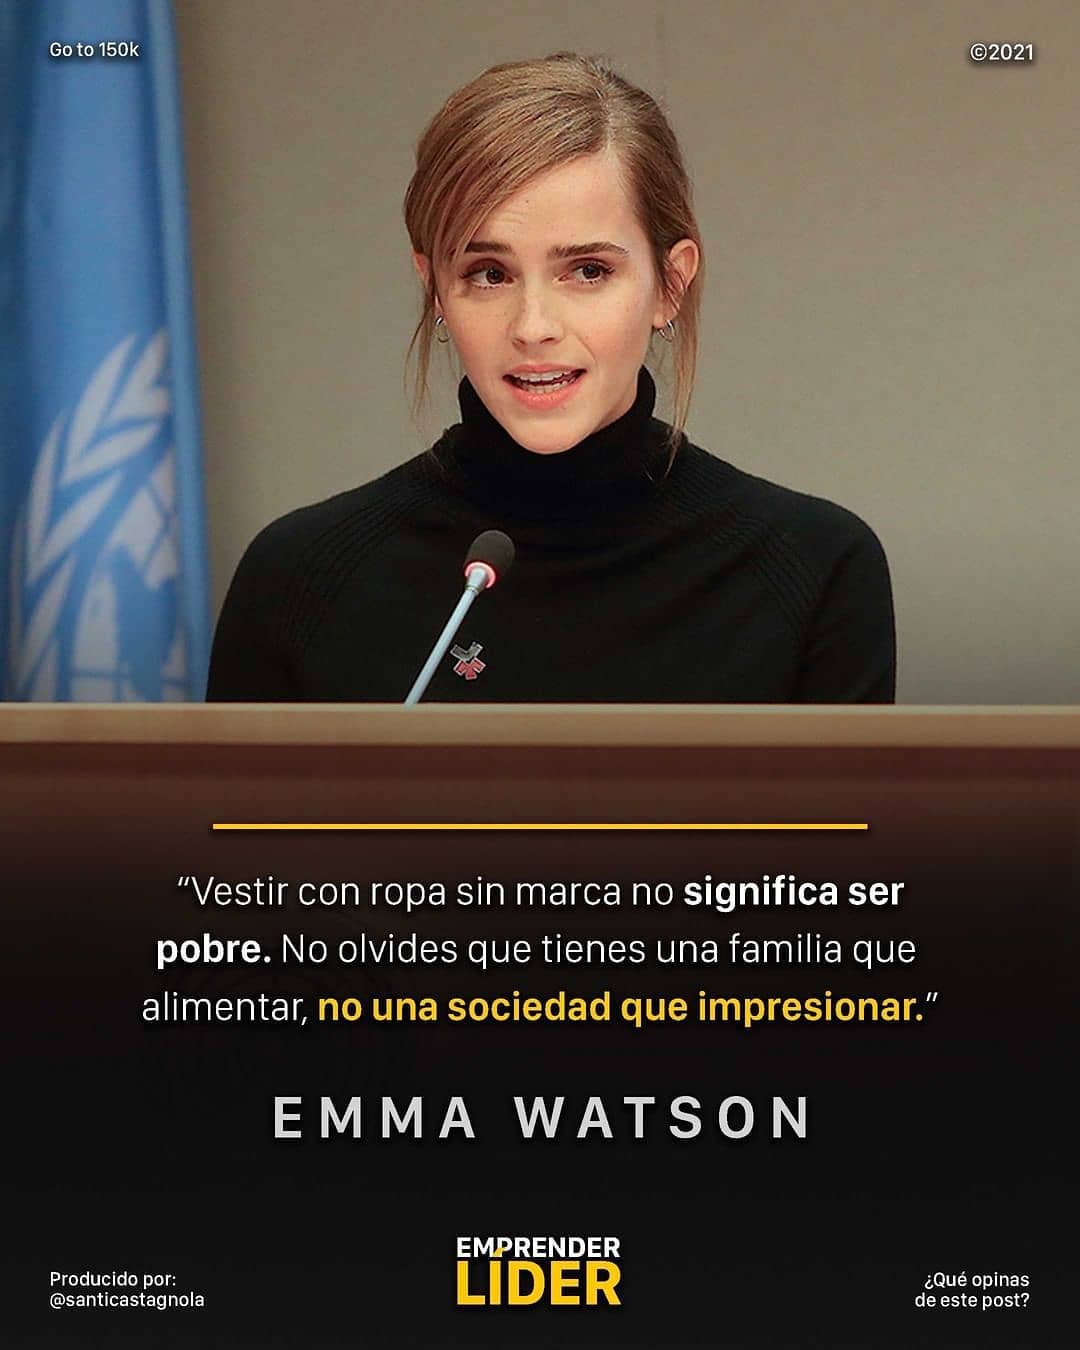 "Vestir con ropa sin marca no significa ser pobre. No olvides que tienes una familia que alimentar, no una sociedad que impresionar." Emma Watson.